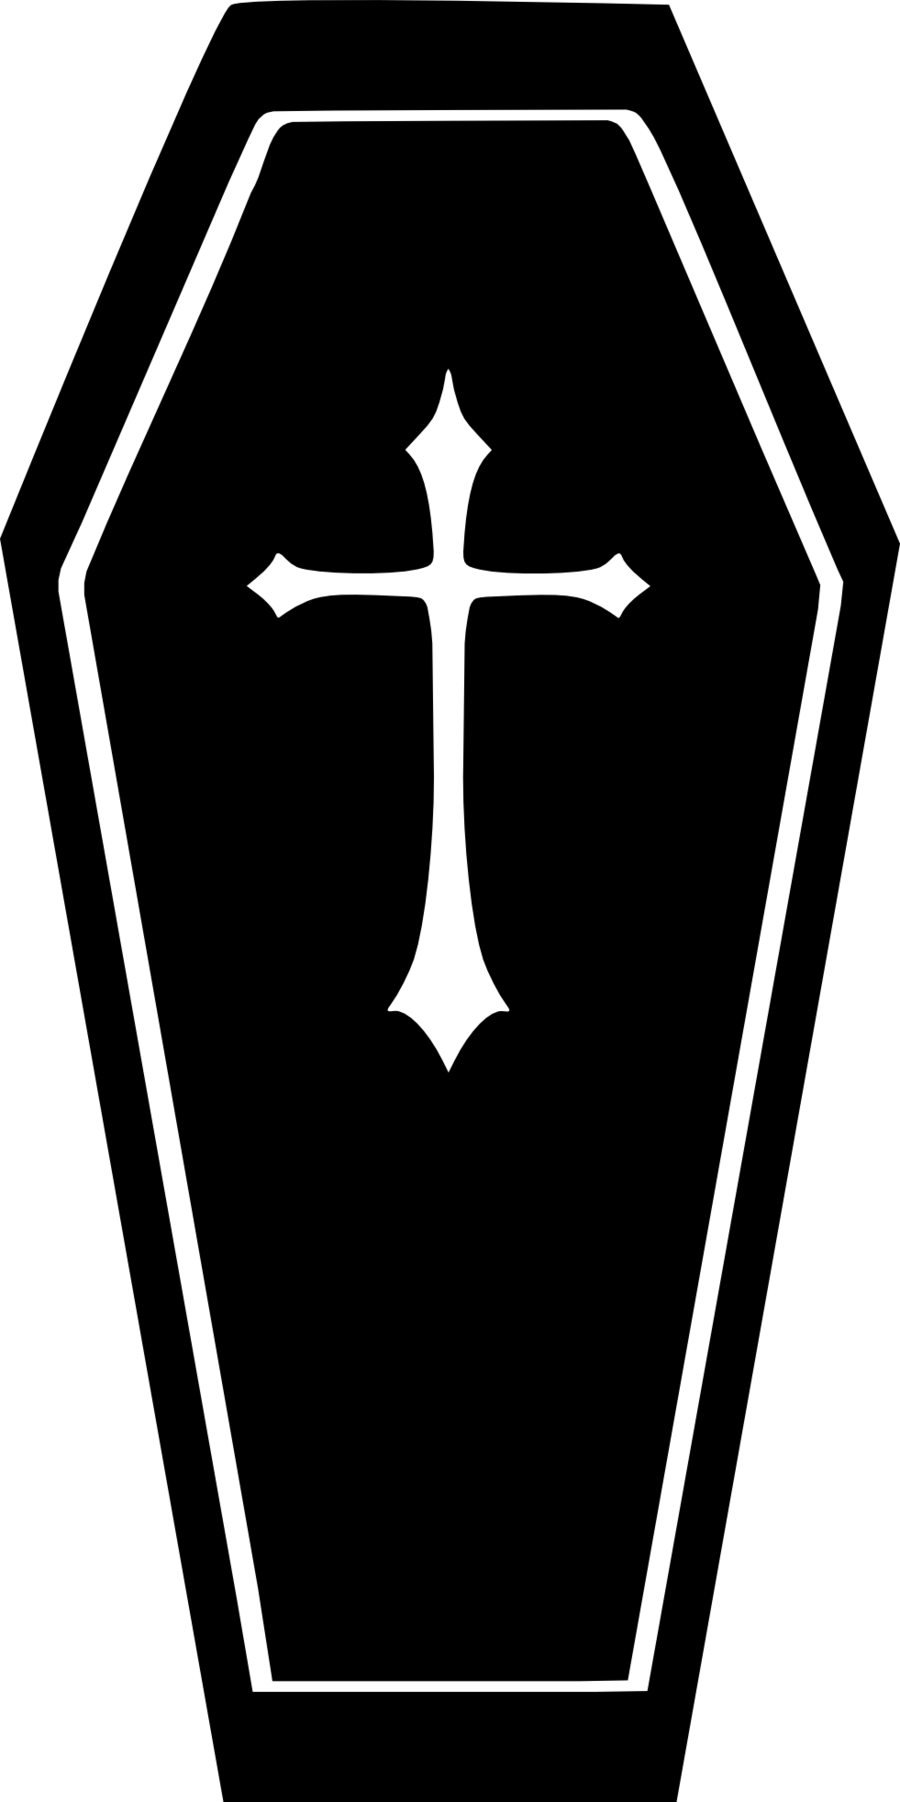 Coffin silhouette